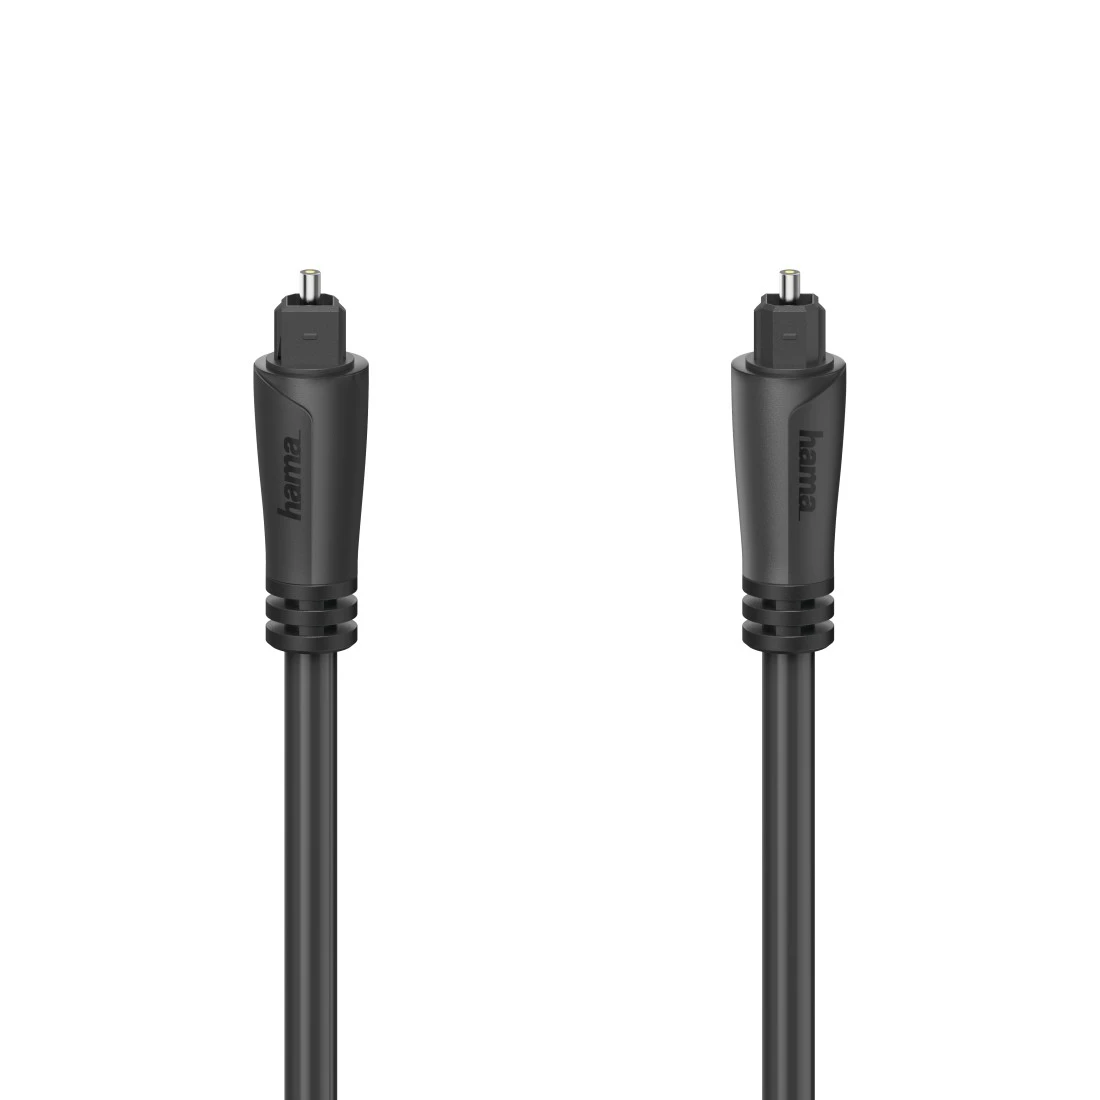 Cable de fibra óptica para audio, conector ODT macho (Toslink), 3,0 m